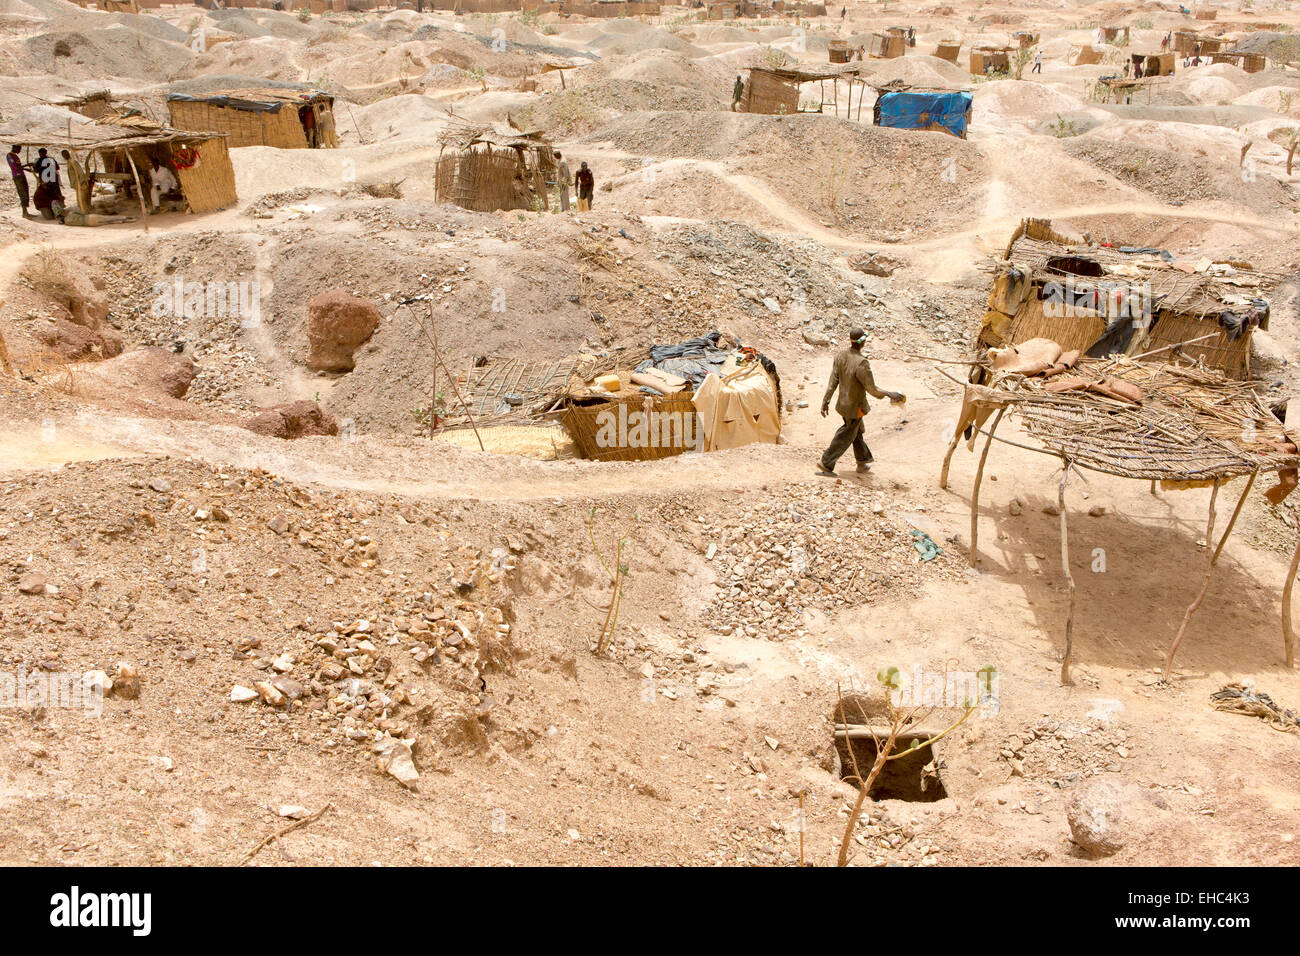 Komobangau gold mines, Niger, 18 mai 2012 : les mineurs au travail. La terre est truffée d'ouvrir des puits de mine. Banque D'Images